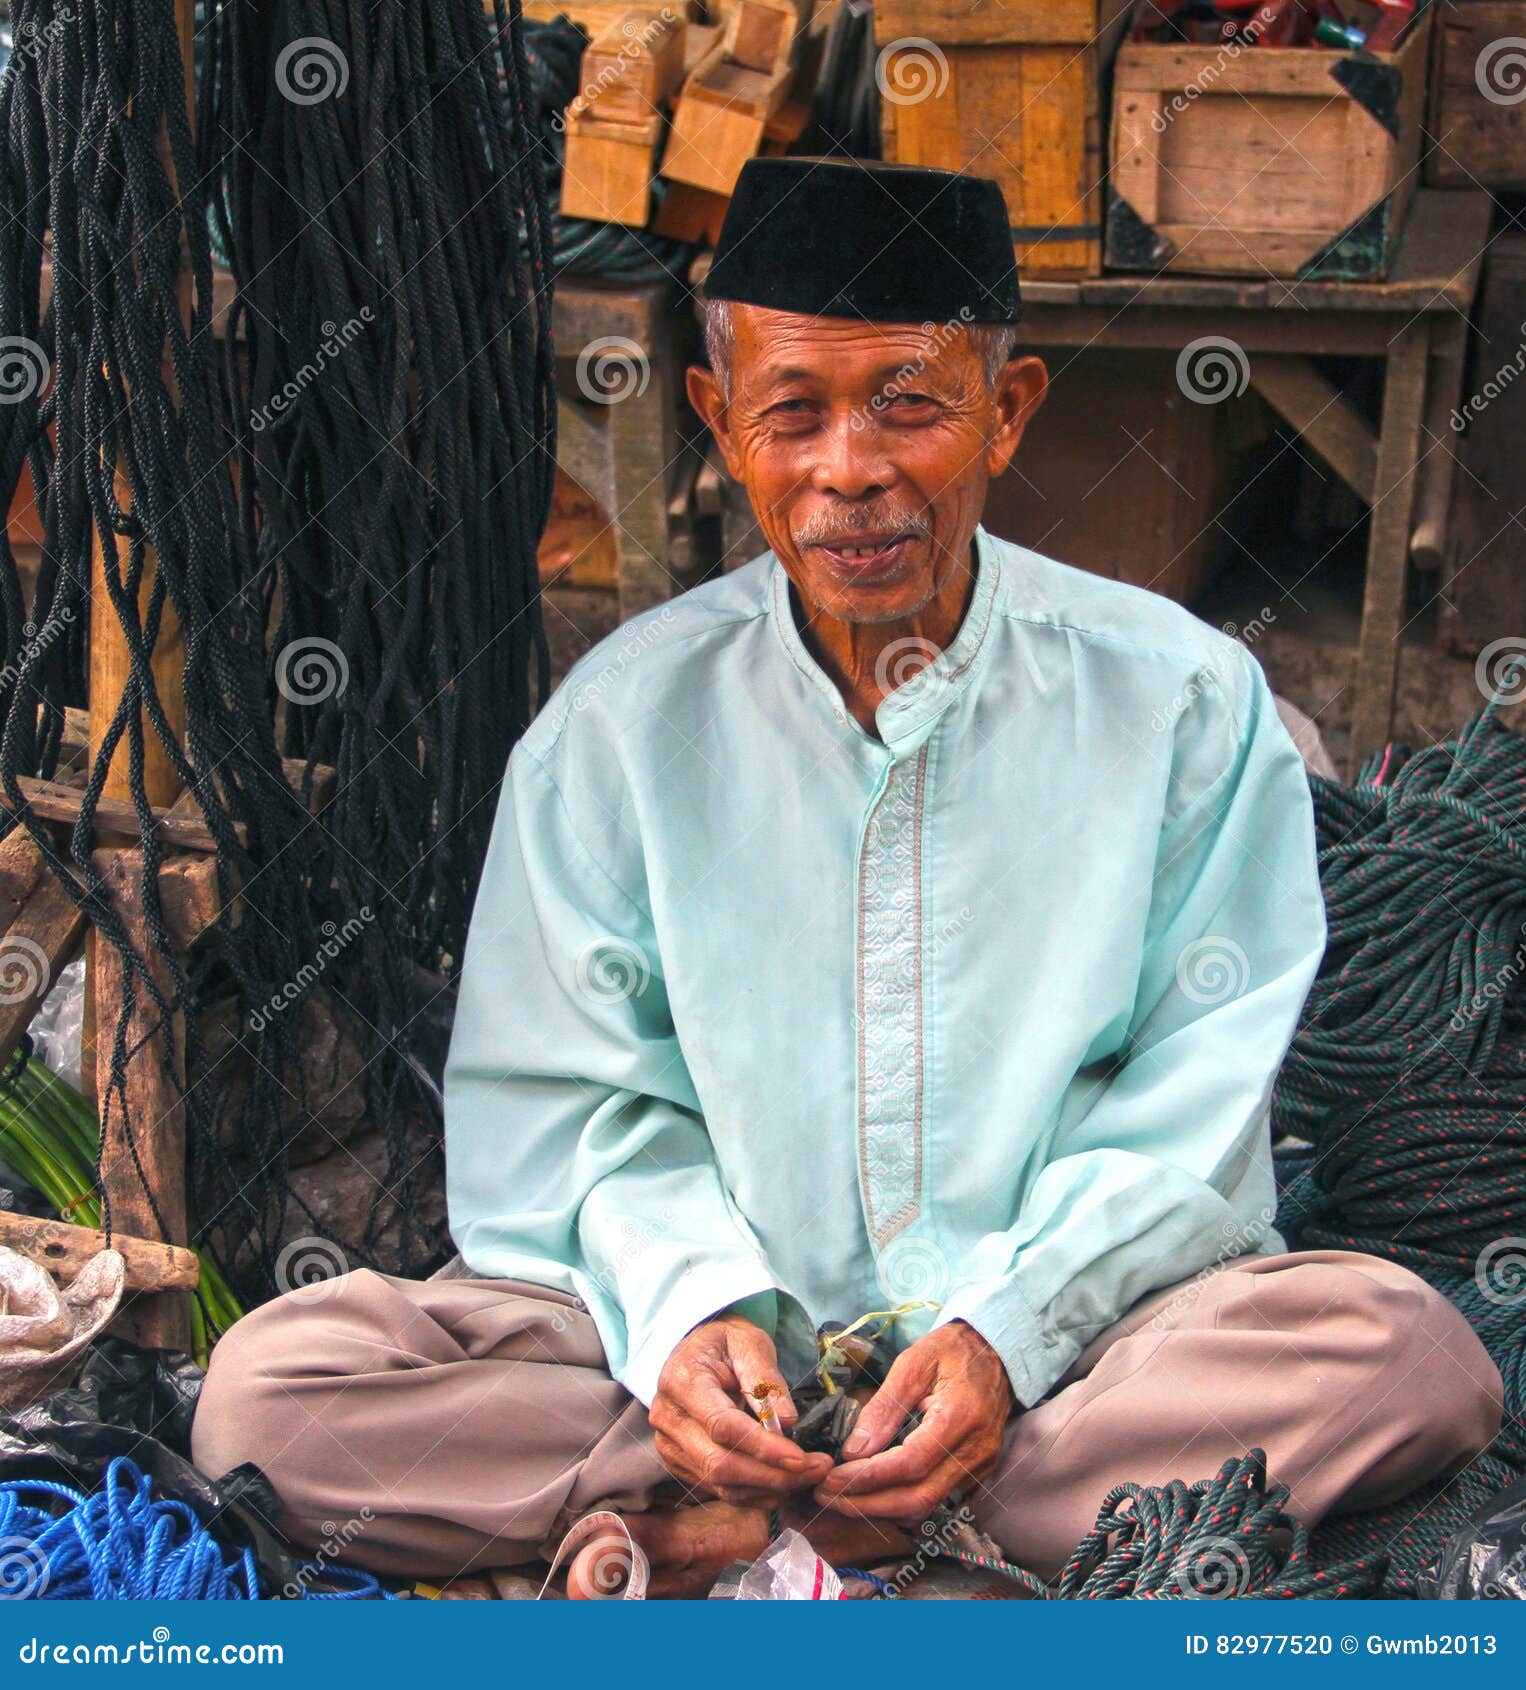 印度尼西亚人的新郎 库存图片. 图片 包括有 æÿ¥æ‰¾, °å»º, å…³ç³», å¸ƒèµ, å¹¸ç¦ - 52075955